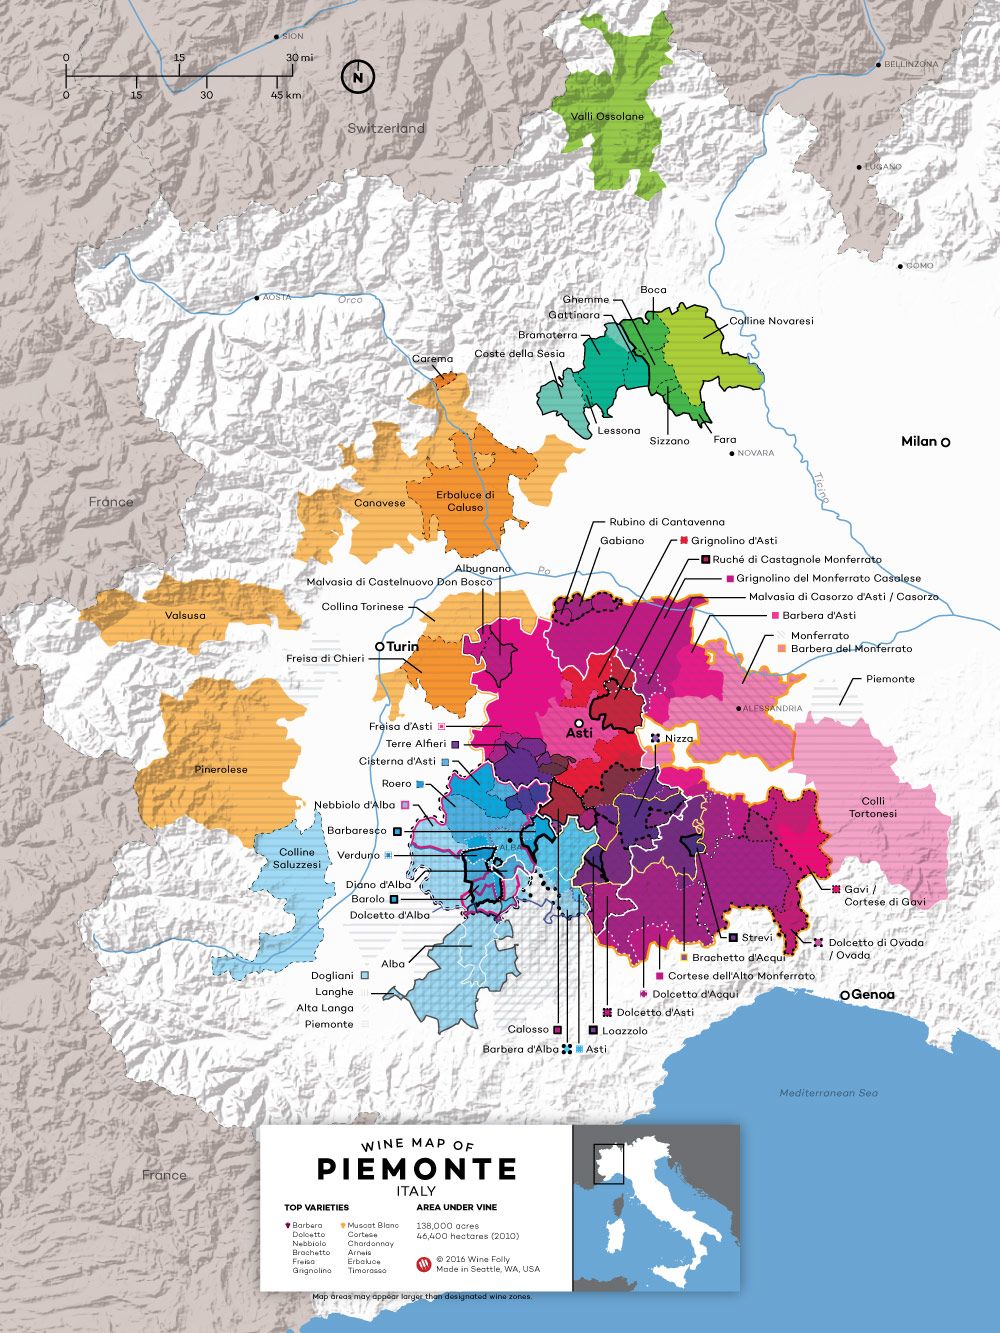 Nebbiolo bor tények - a Wine Folly ízlési profil radar diagramja